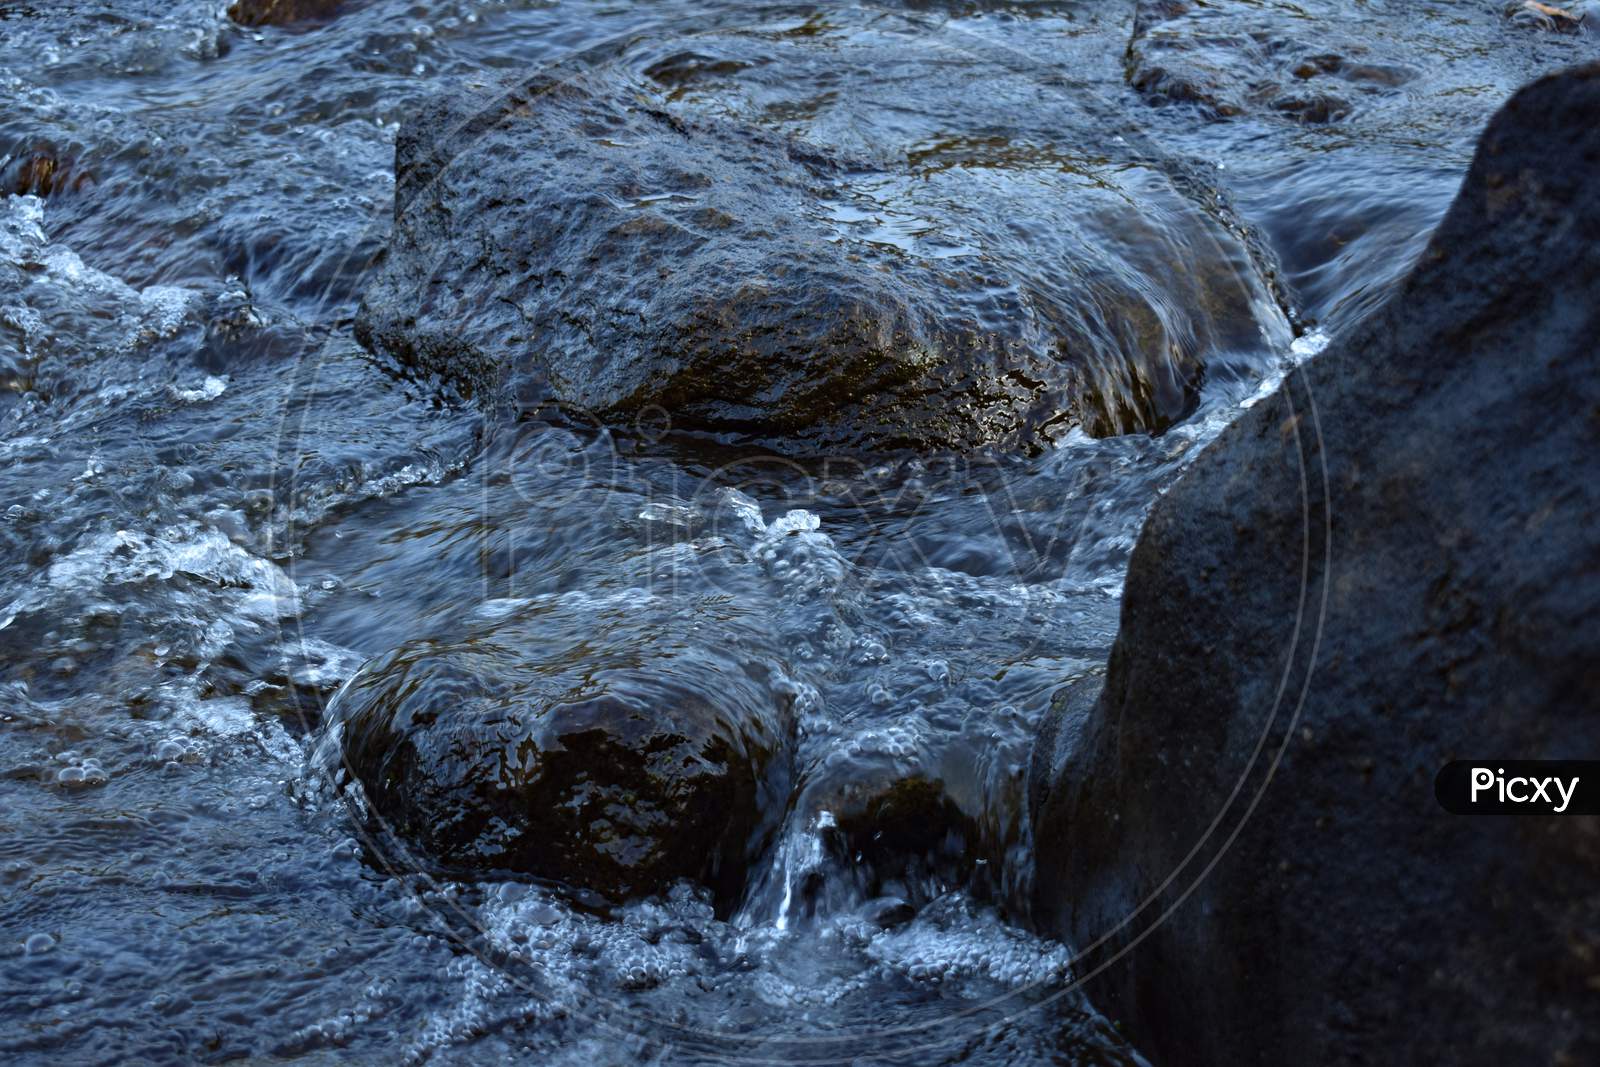 Water flowing in waterfall through rocks